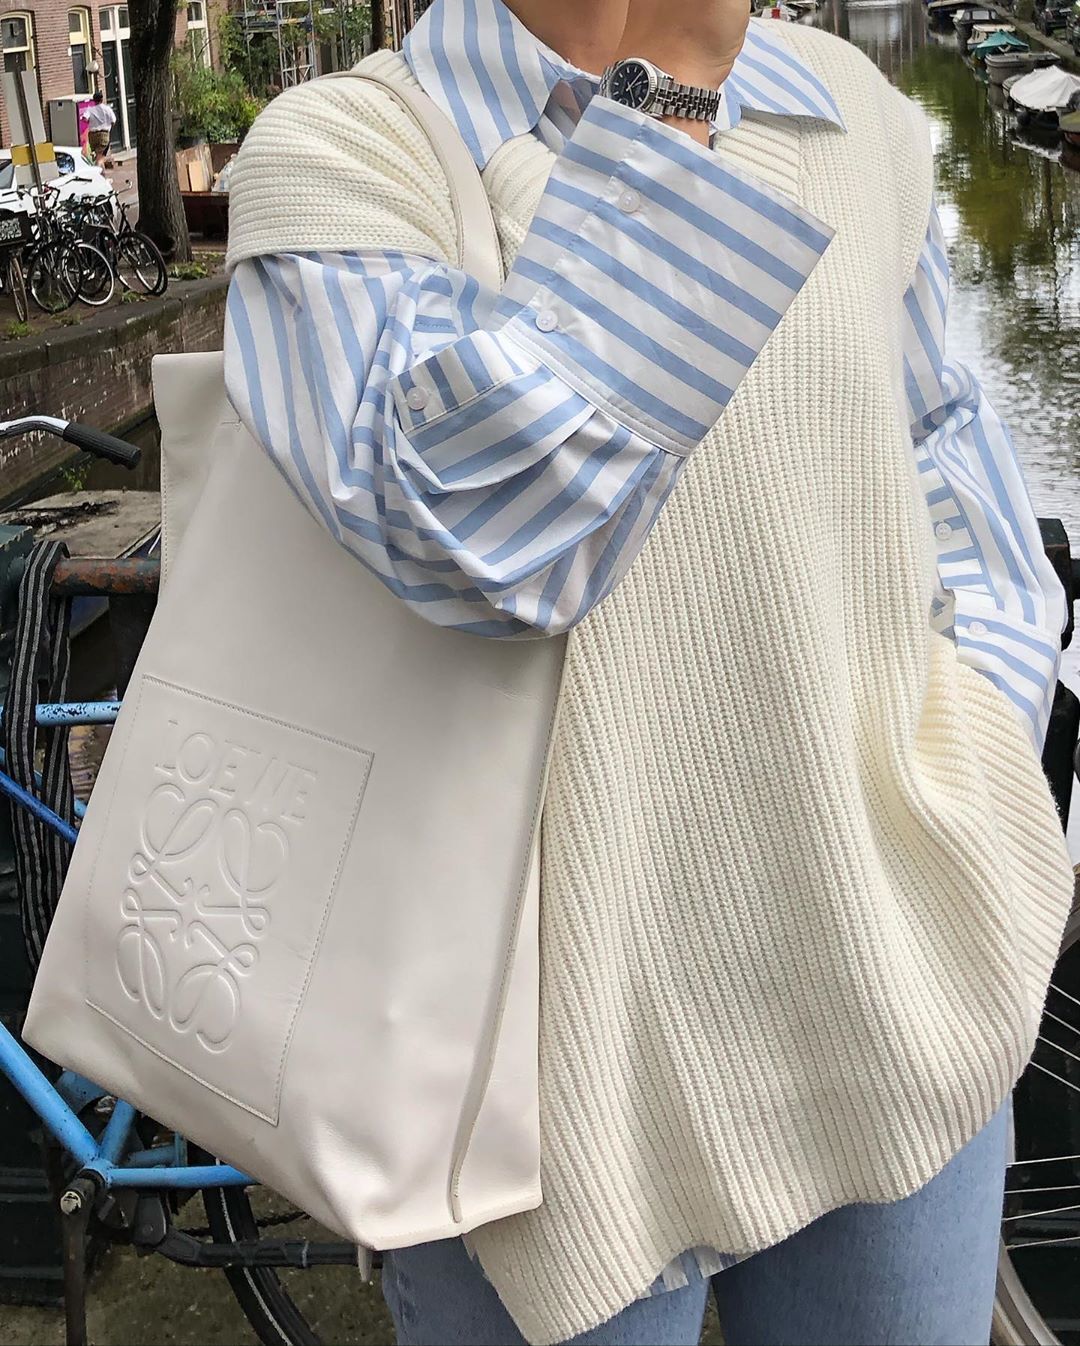 White loose V-neck sleeveless knit vest women's mid-length sweater